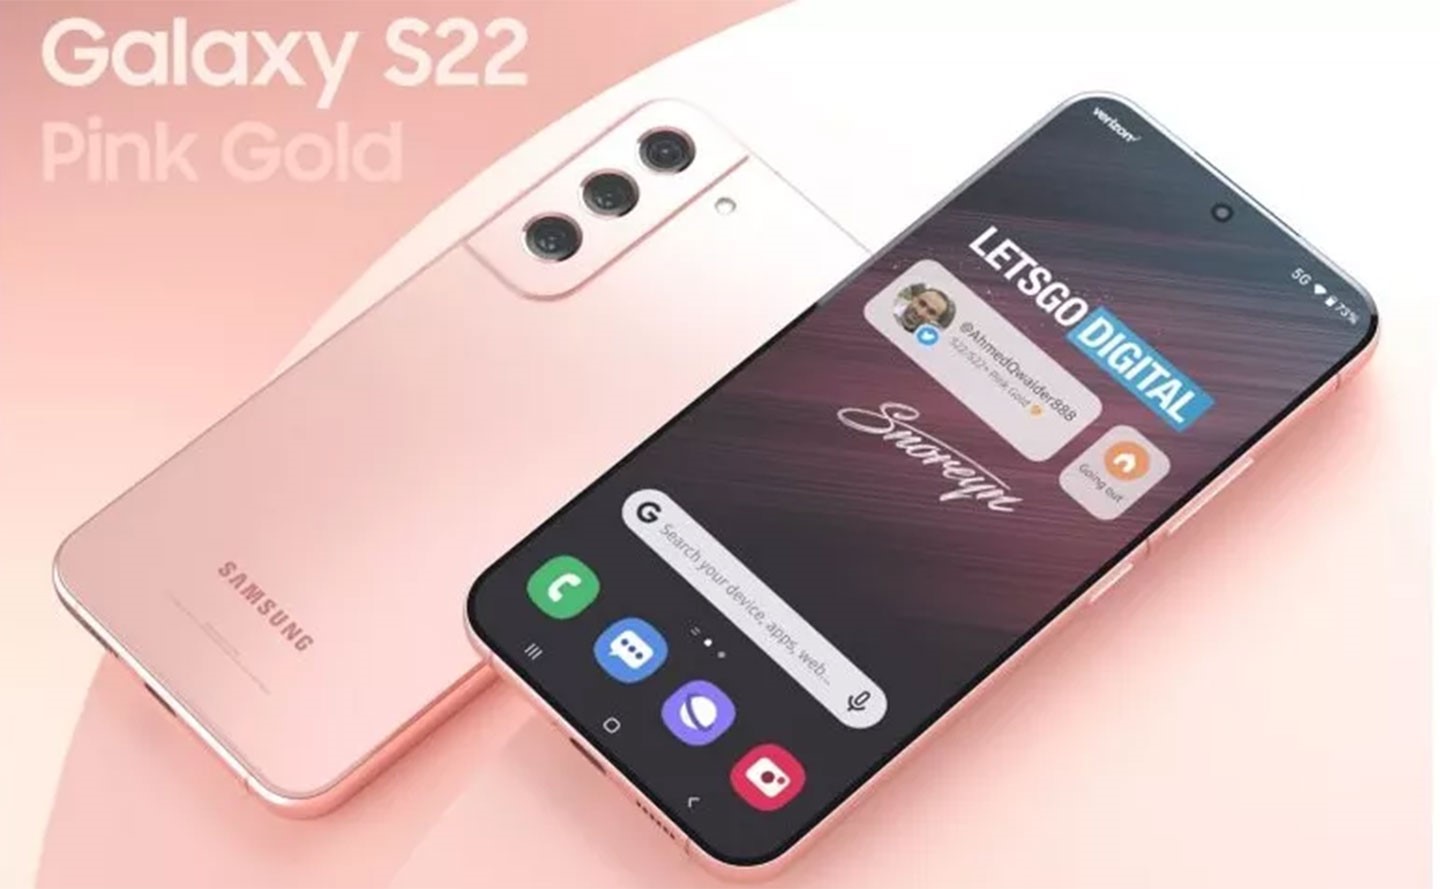 Techrader 同樣曝光了 Galaxy S22 的新色「玫瑰金/粉金」。